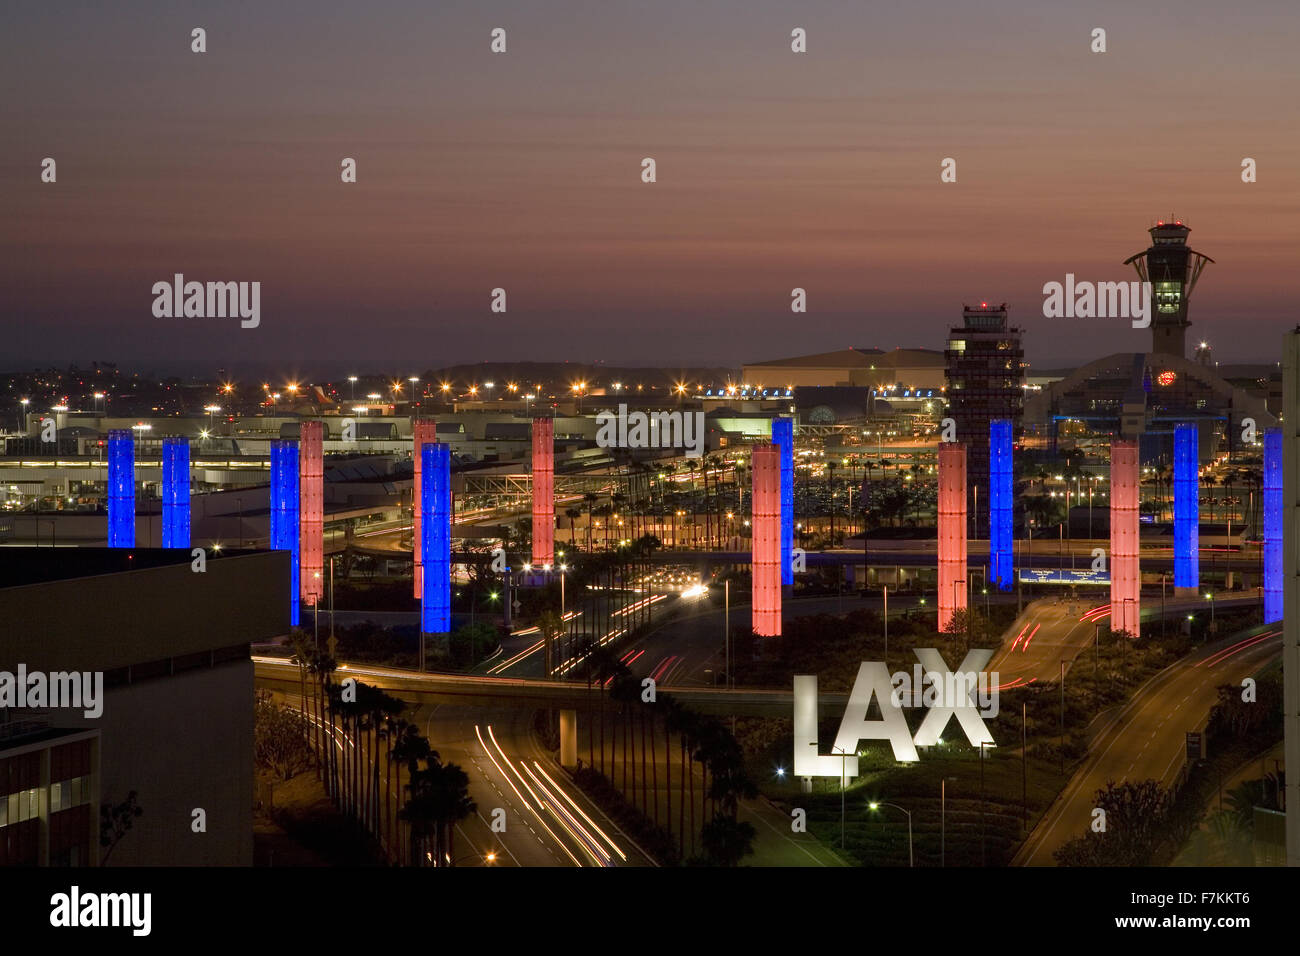 Vue aérienne de l'Aéroport International de Los Angeles LAX au coucher du soleil avec des tubes d'éclairage décoratif, Los Angeles, Californie Banque D'Images